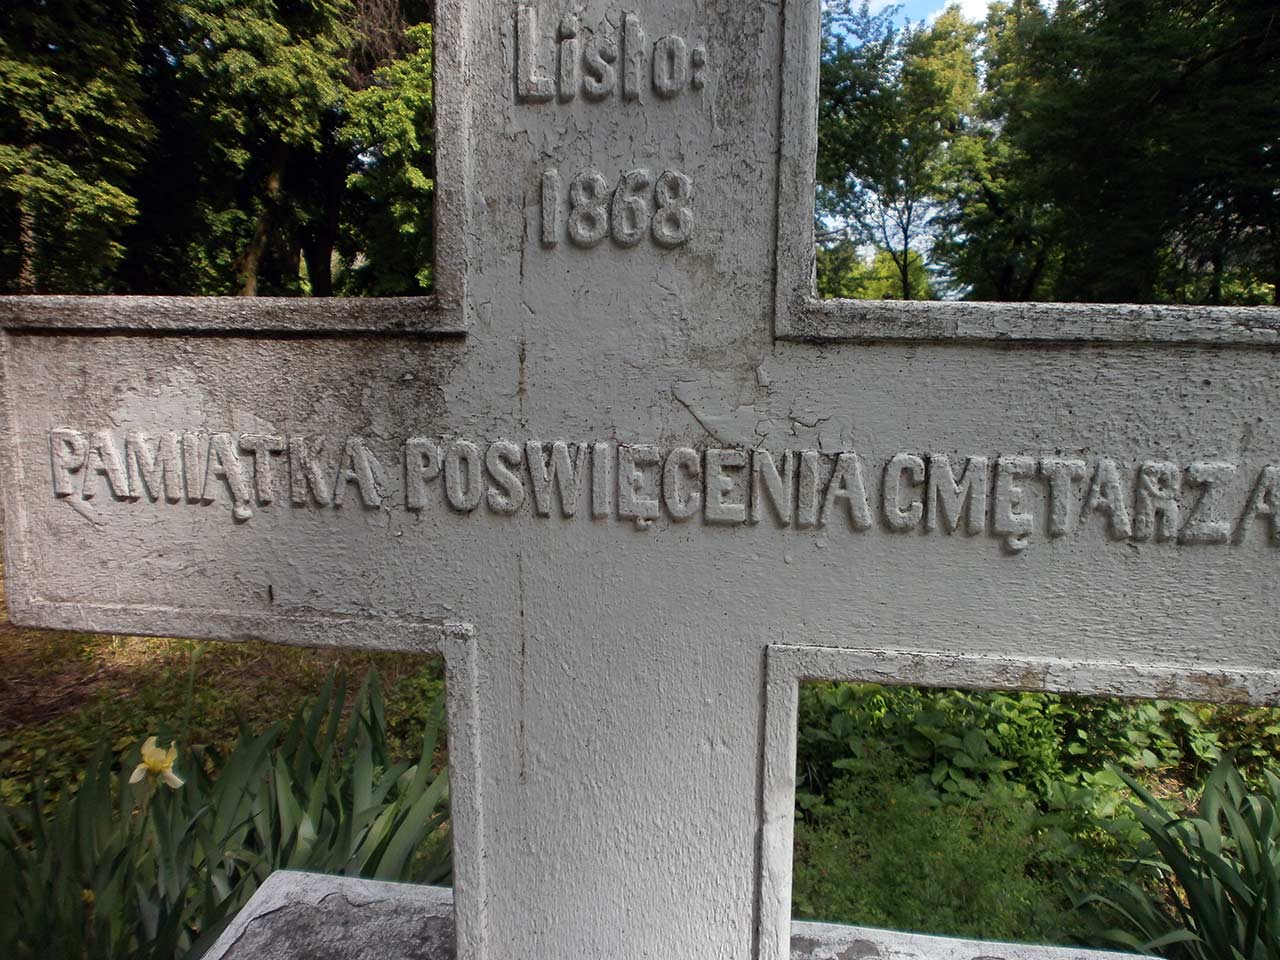 Krzyż, upamiętniający poświęcenie niemirowskiego cmentarza w 1868 roku